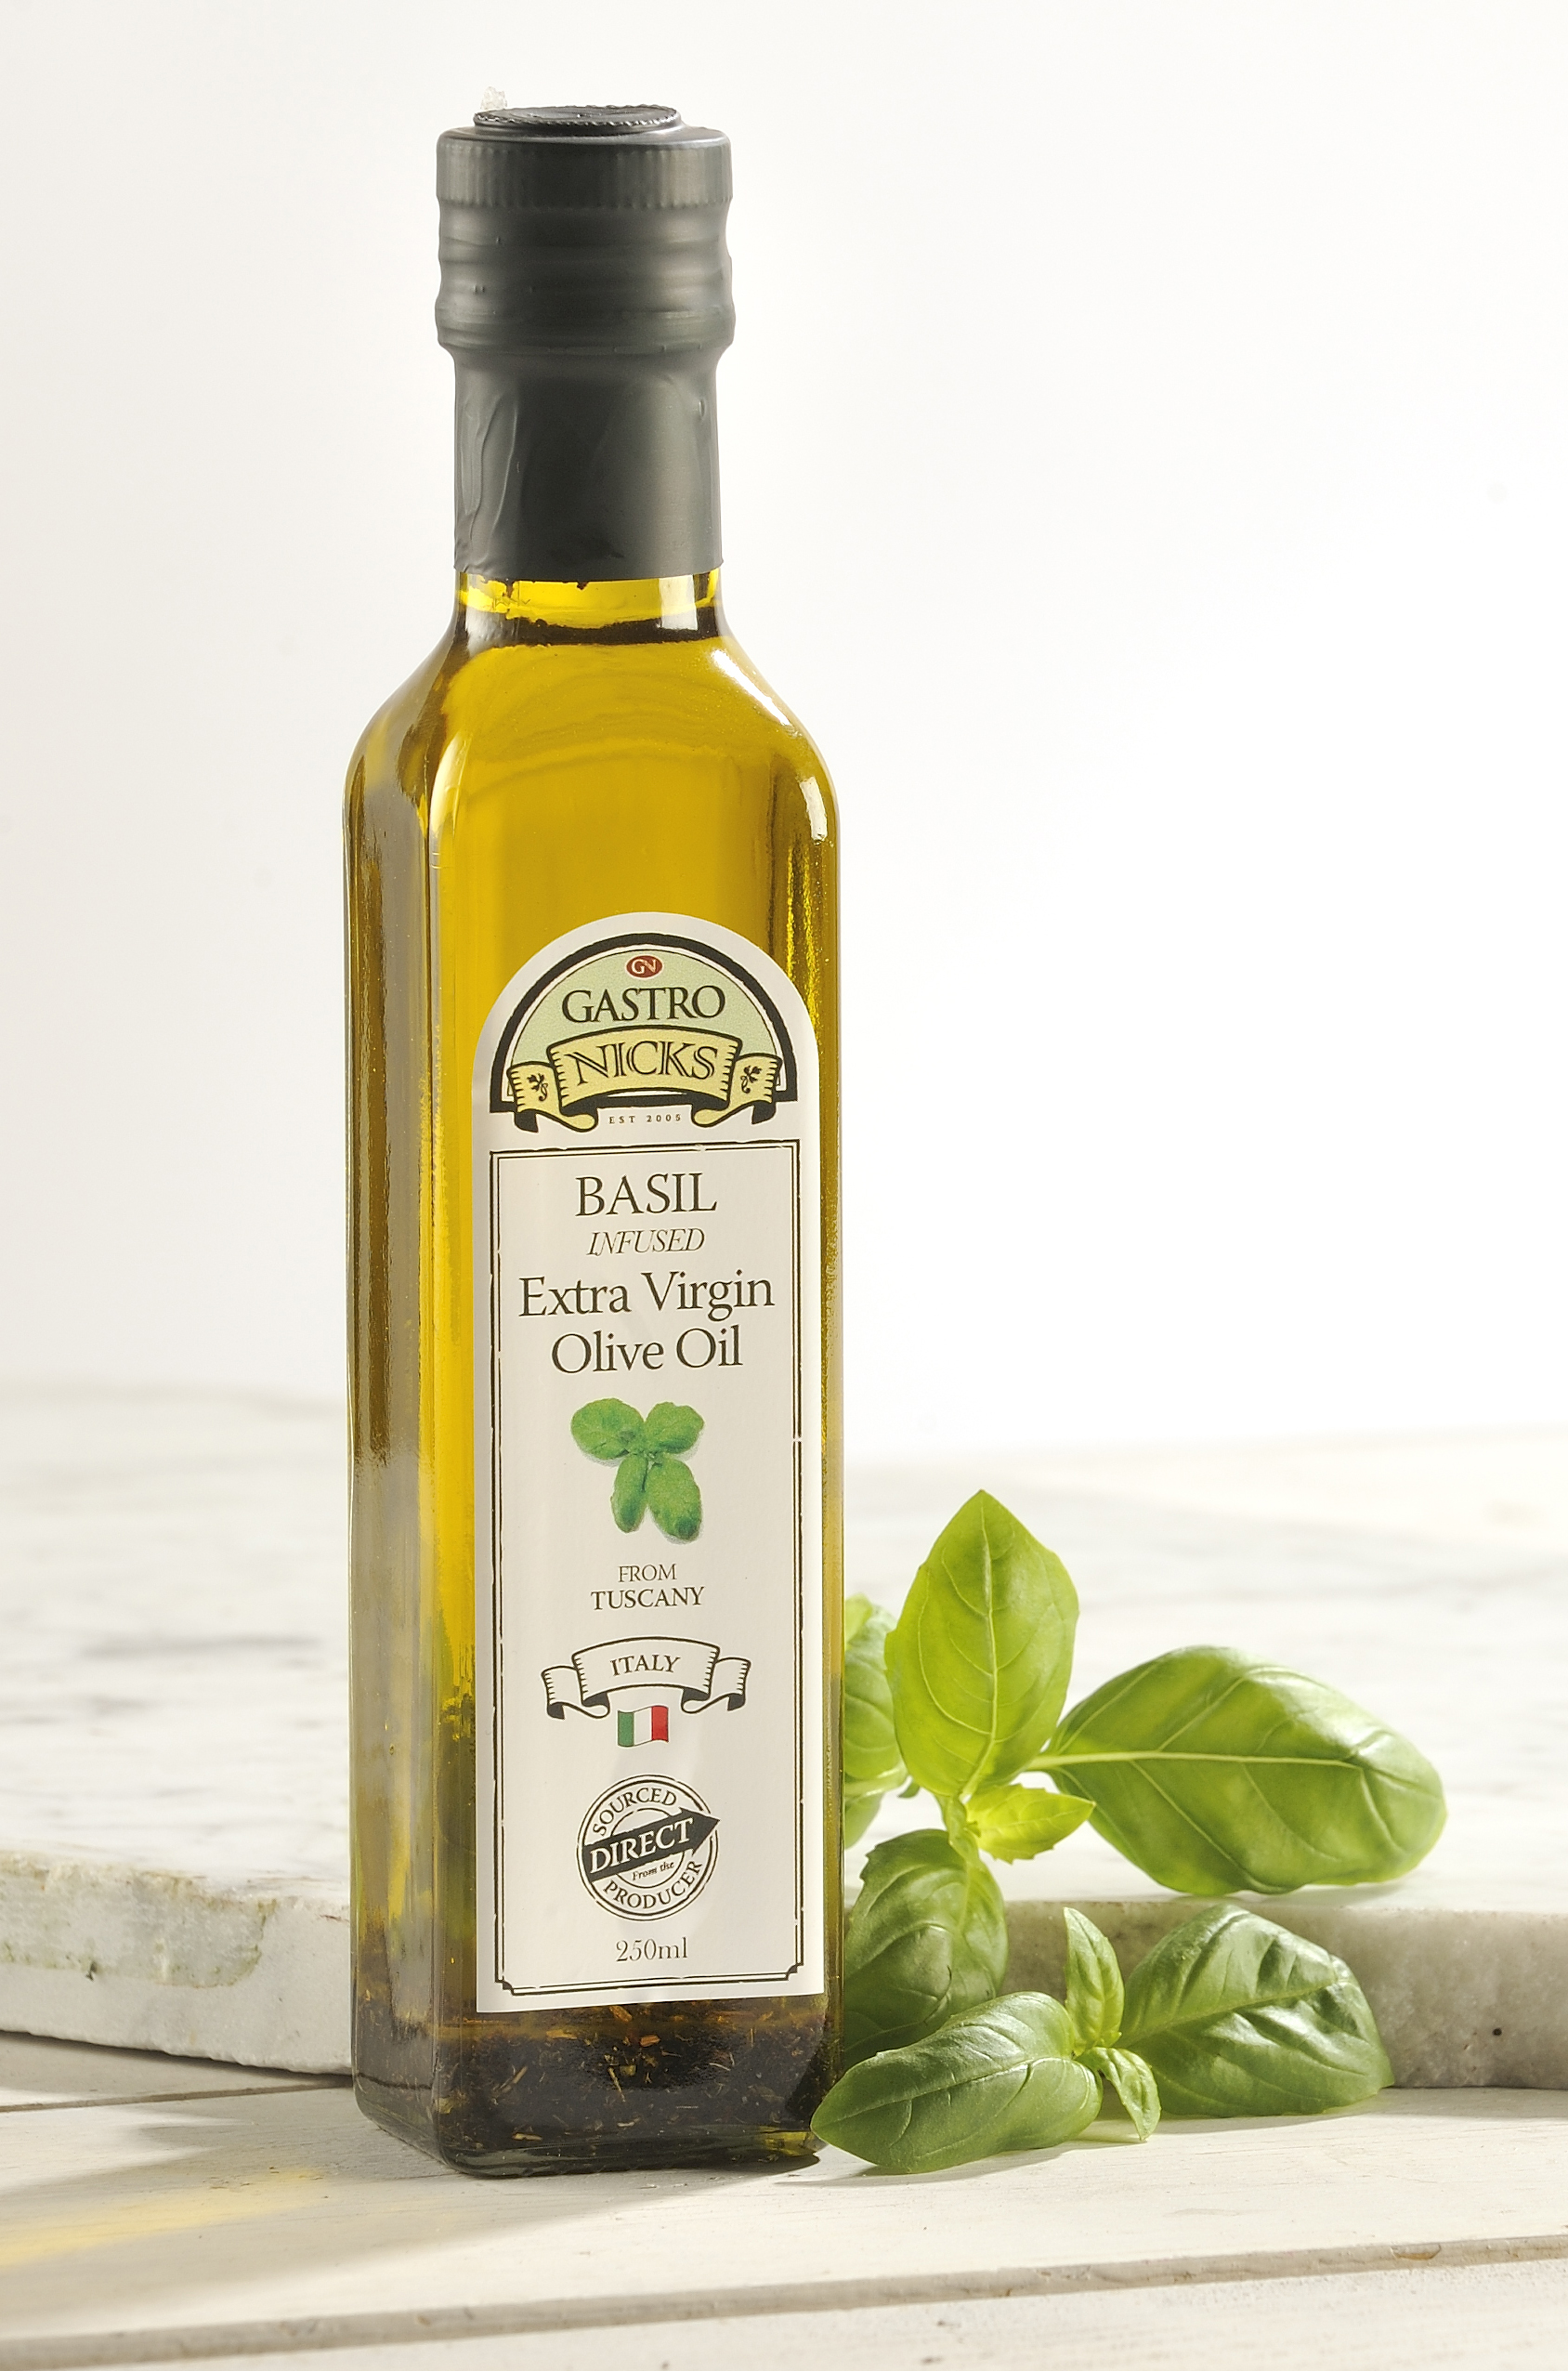 Продам оливковое масло. Оливер оил масло оливковое. Olive Oil масло оливковое. Олив Ойл масло оливковое. Оливковое масло Чиро Италия.